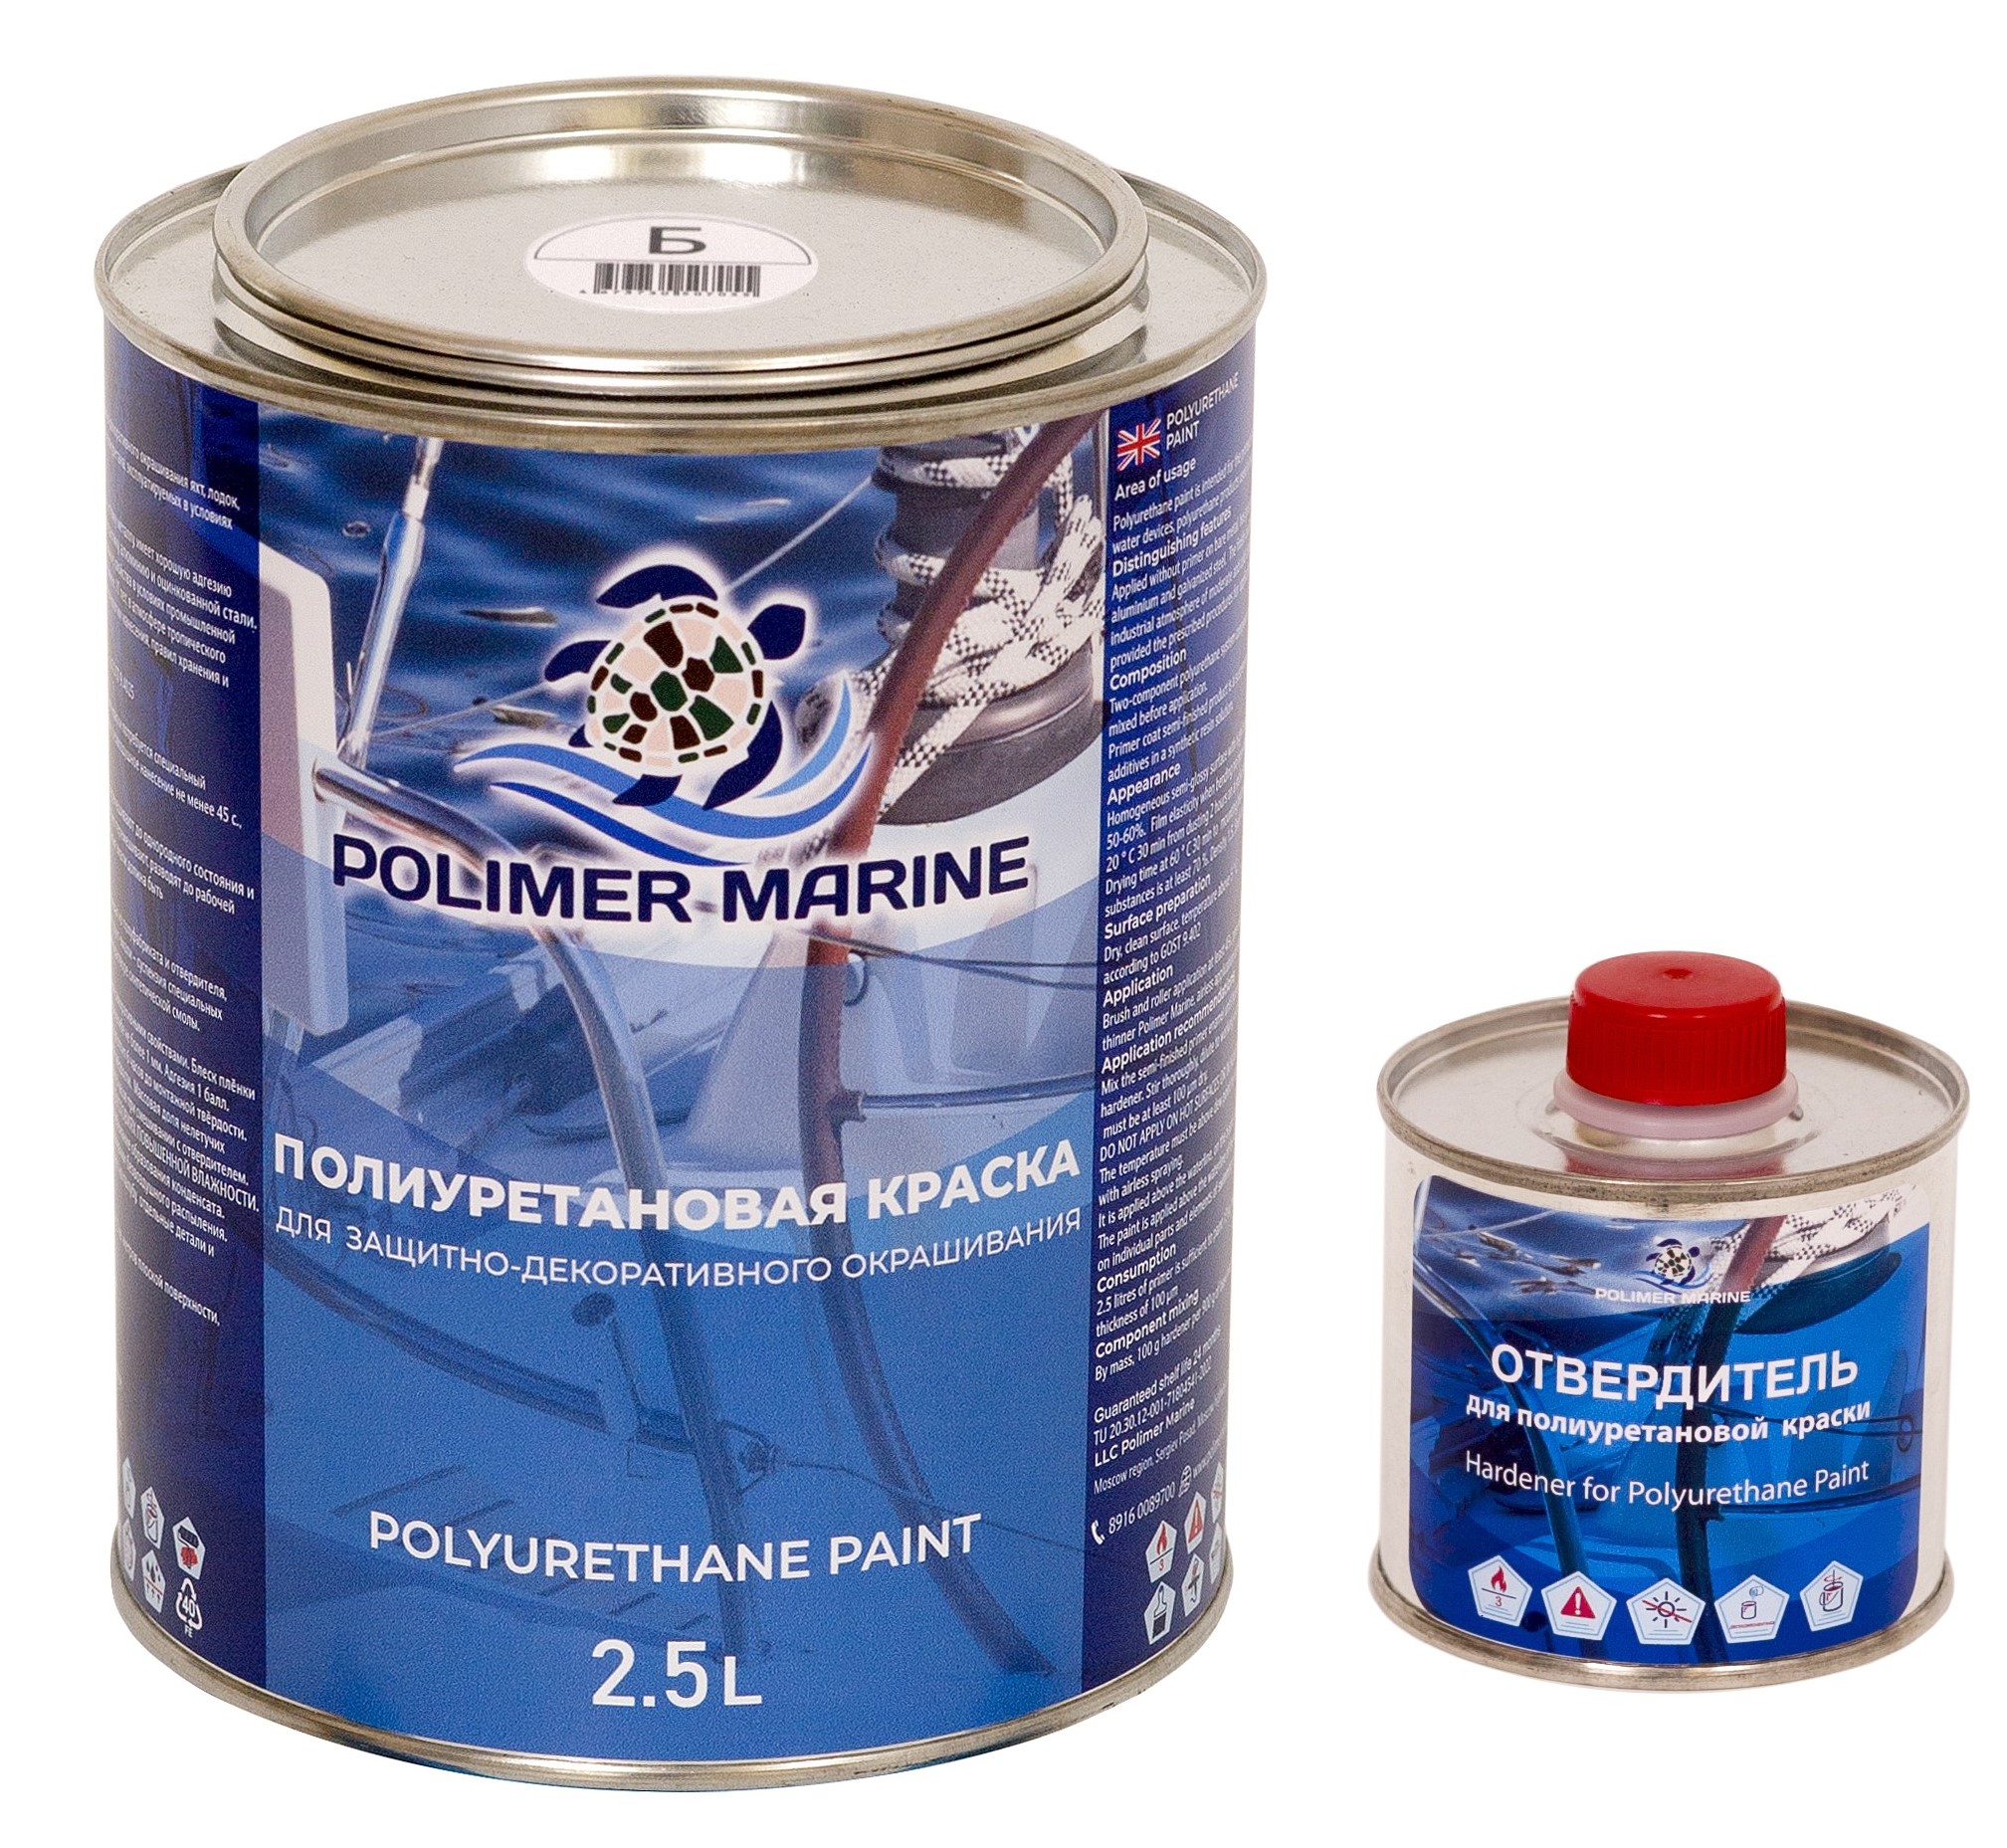 Полиуретановая краска Polimer Marine КП Кп25б белая 2.5 л двухкомпонентная 2К полиуретановая краска серая 0 5 л polimer marine двухкомпонентная 2к